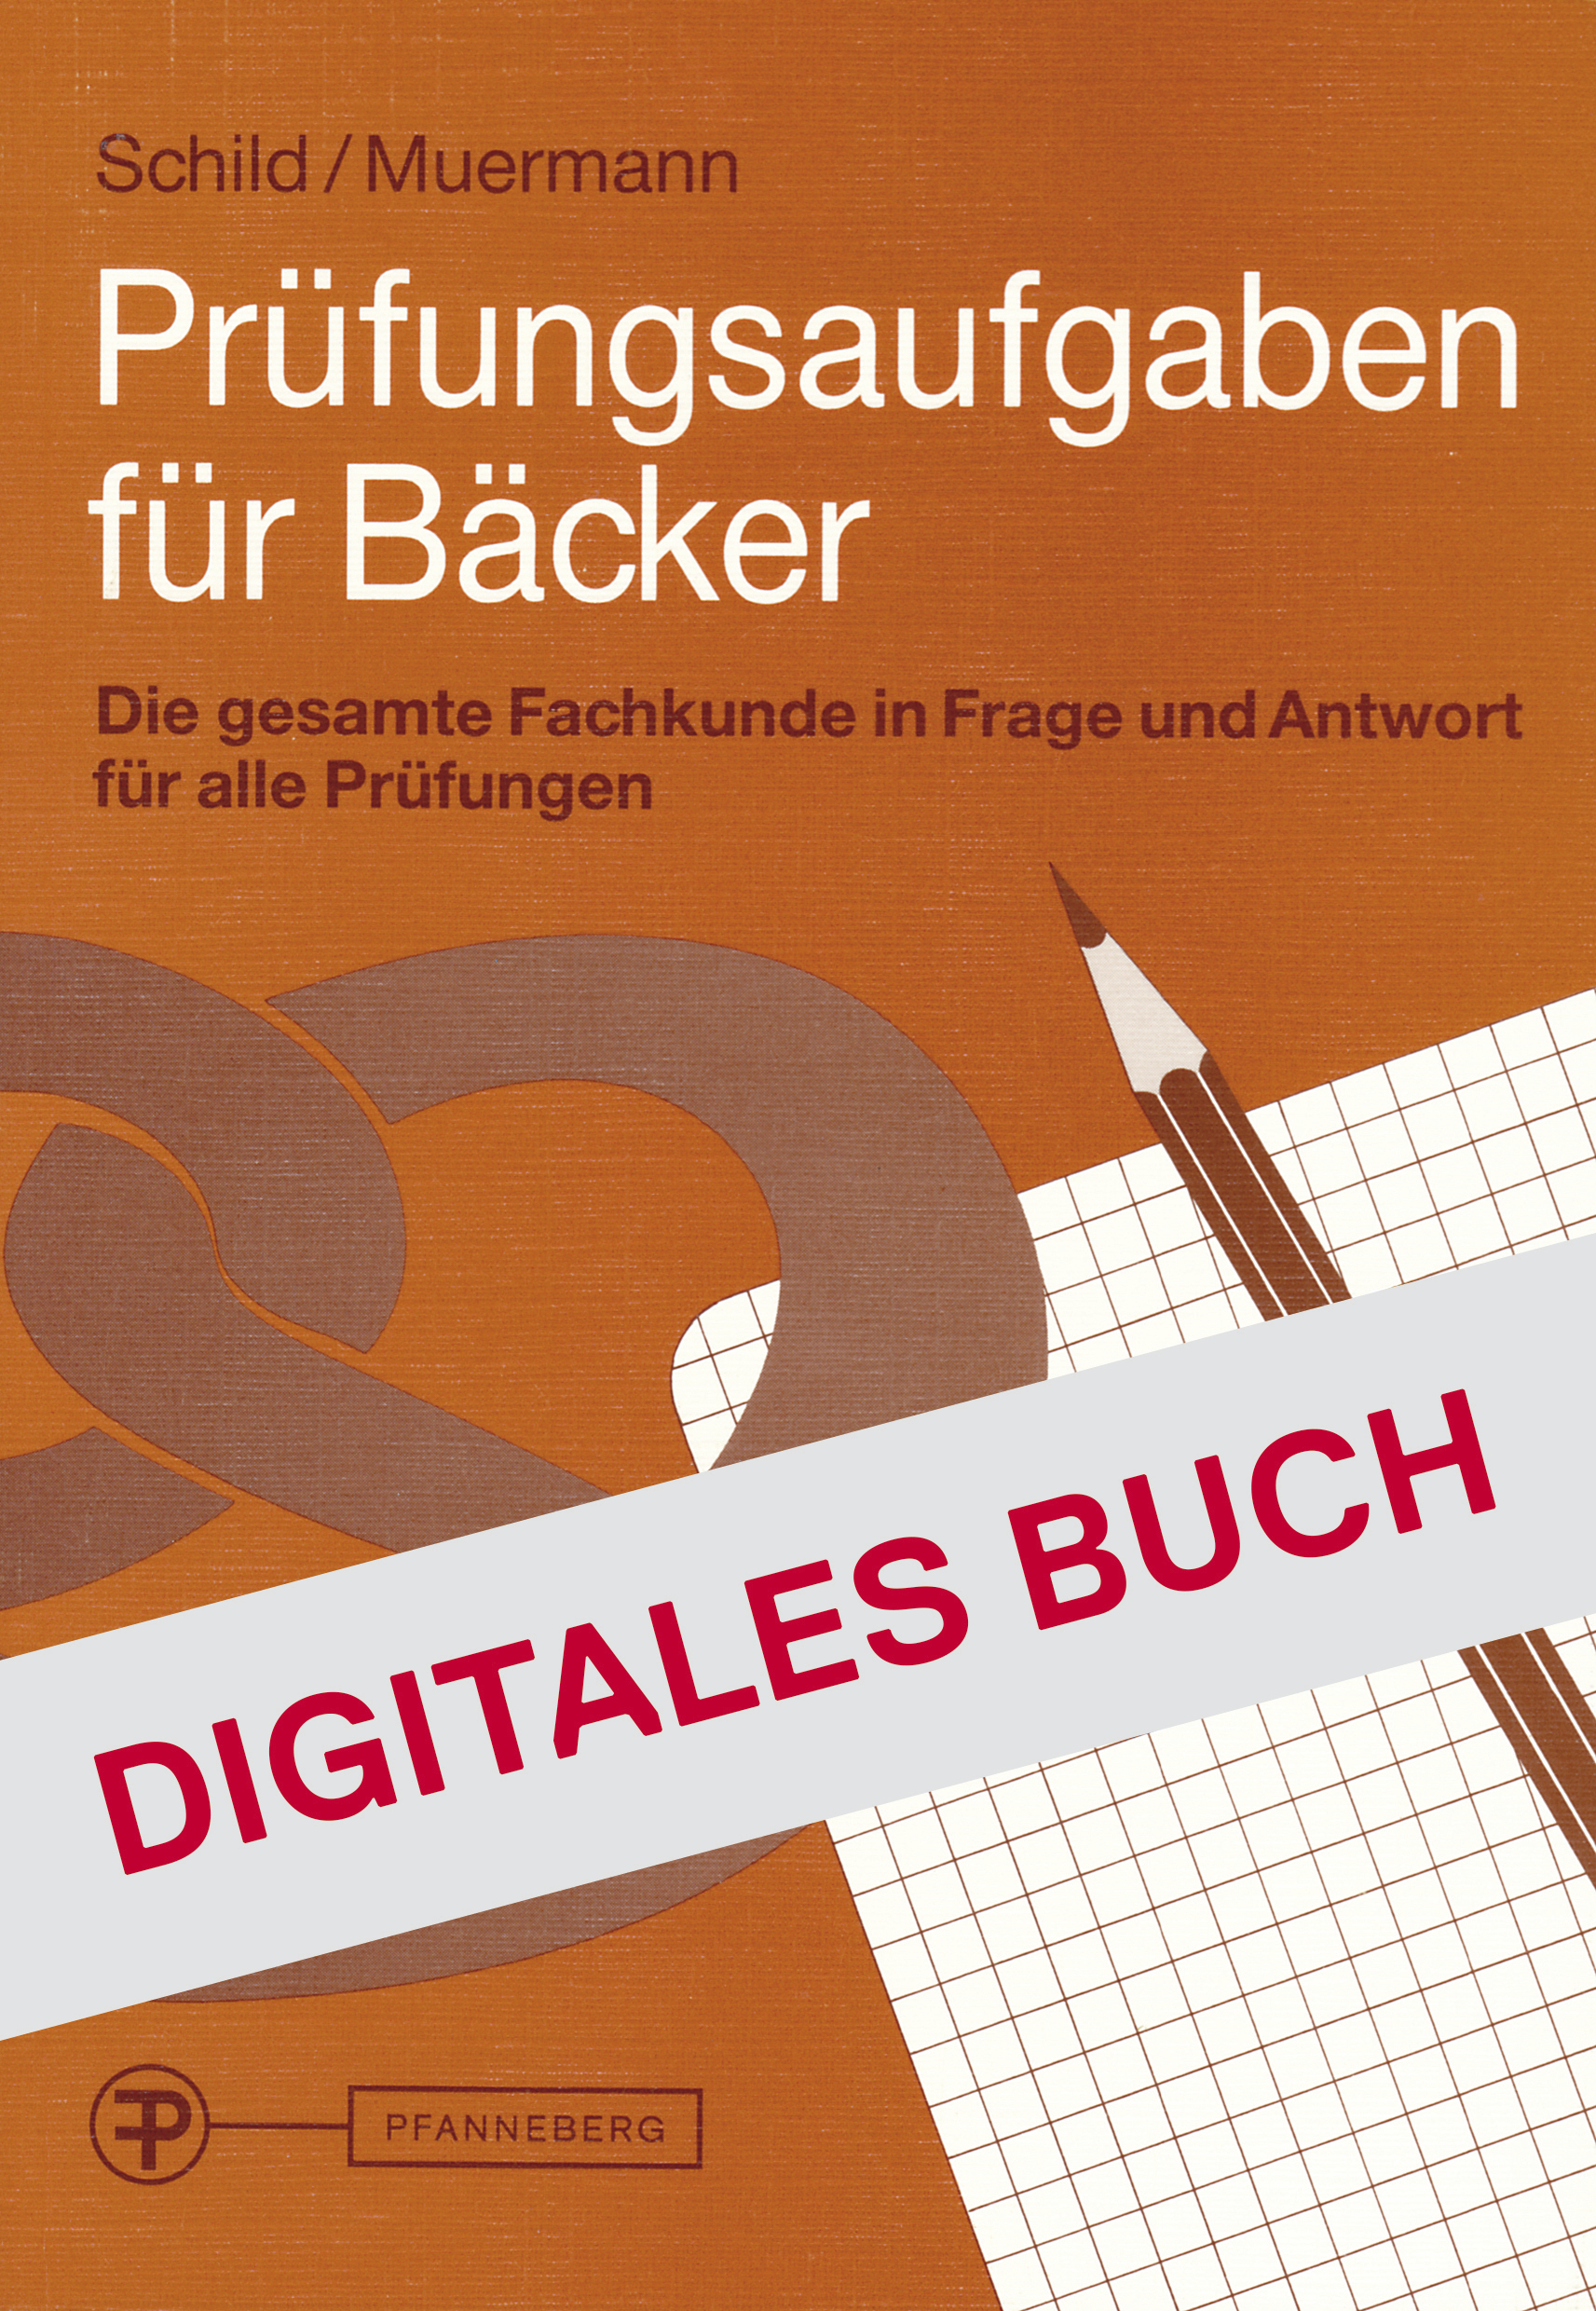 Prüfungsaufgaben für Bäcker - Digitales Buch